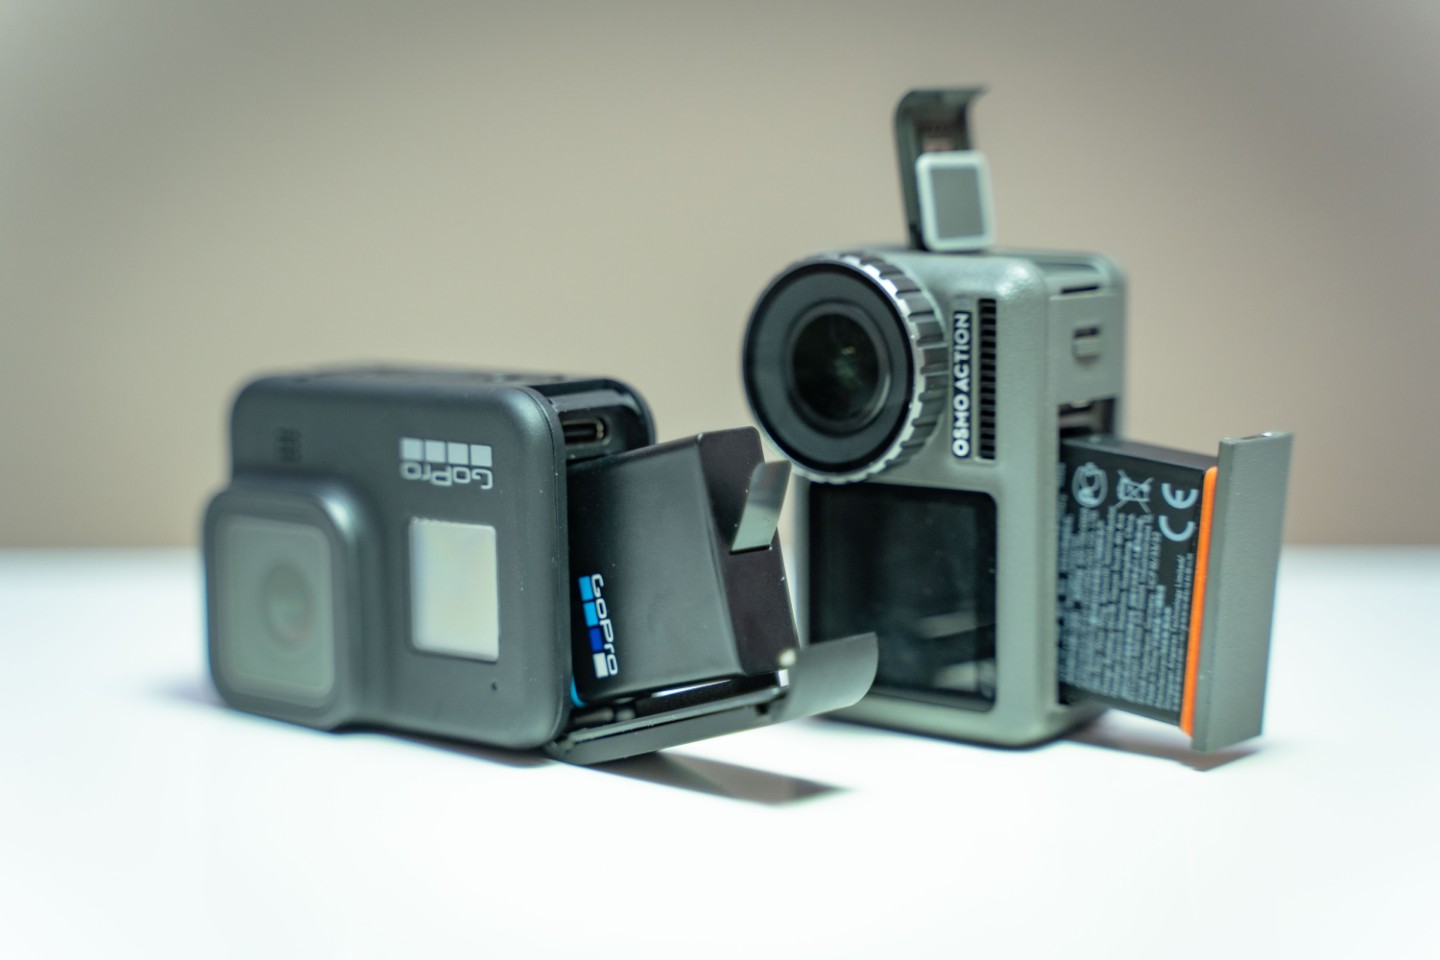 全新gopro Hero 8 Black 运动相机测评面向更专业运动向的运动相机用旧数码相机换购现价 329 99 原价 429 99 德国打折网